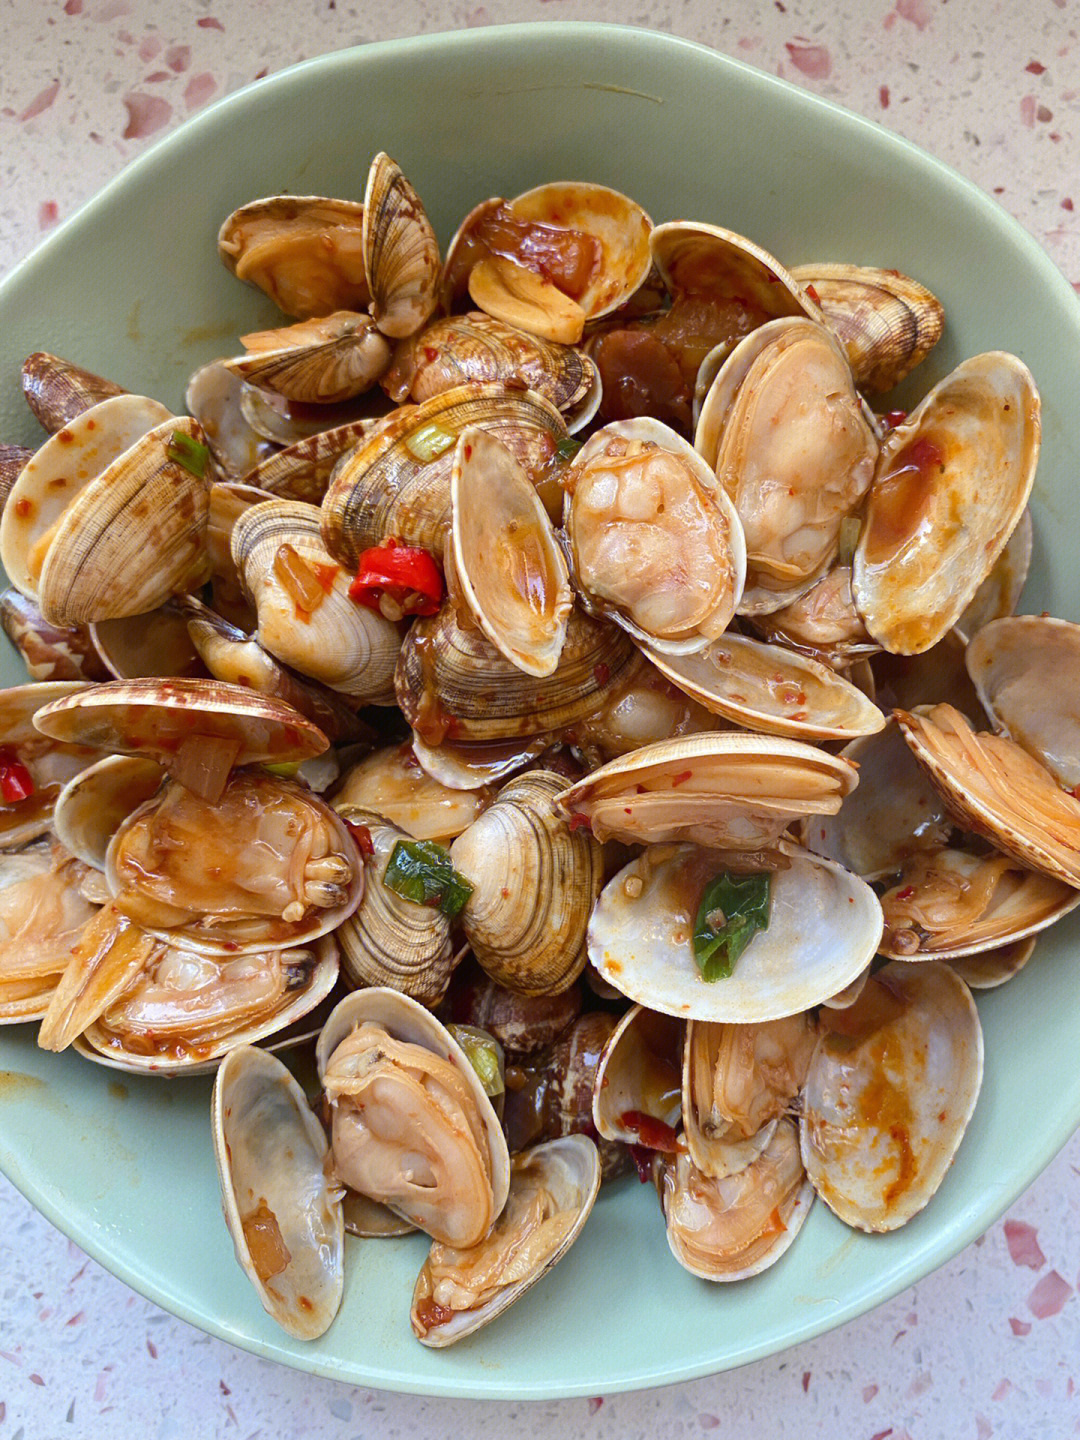 78食材:花蛤500克 洋葱半个 葱蒜 小米辣78做法:11566花蛤